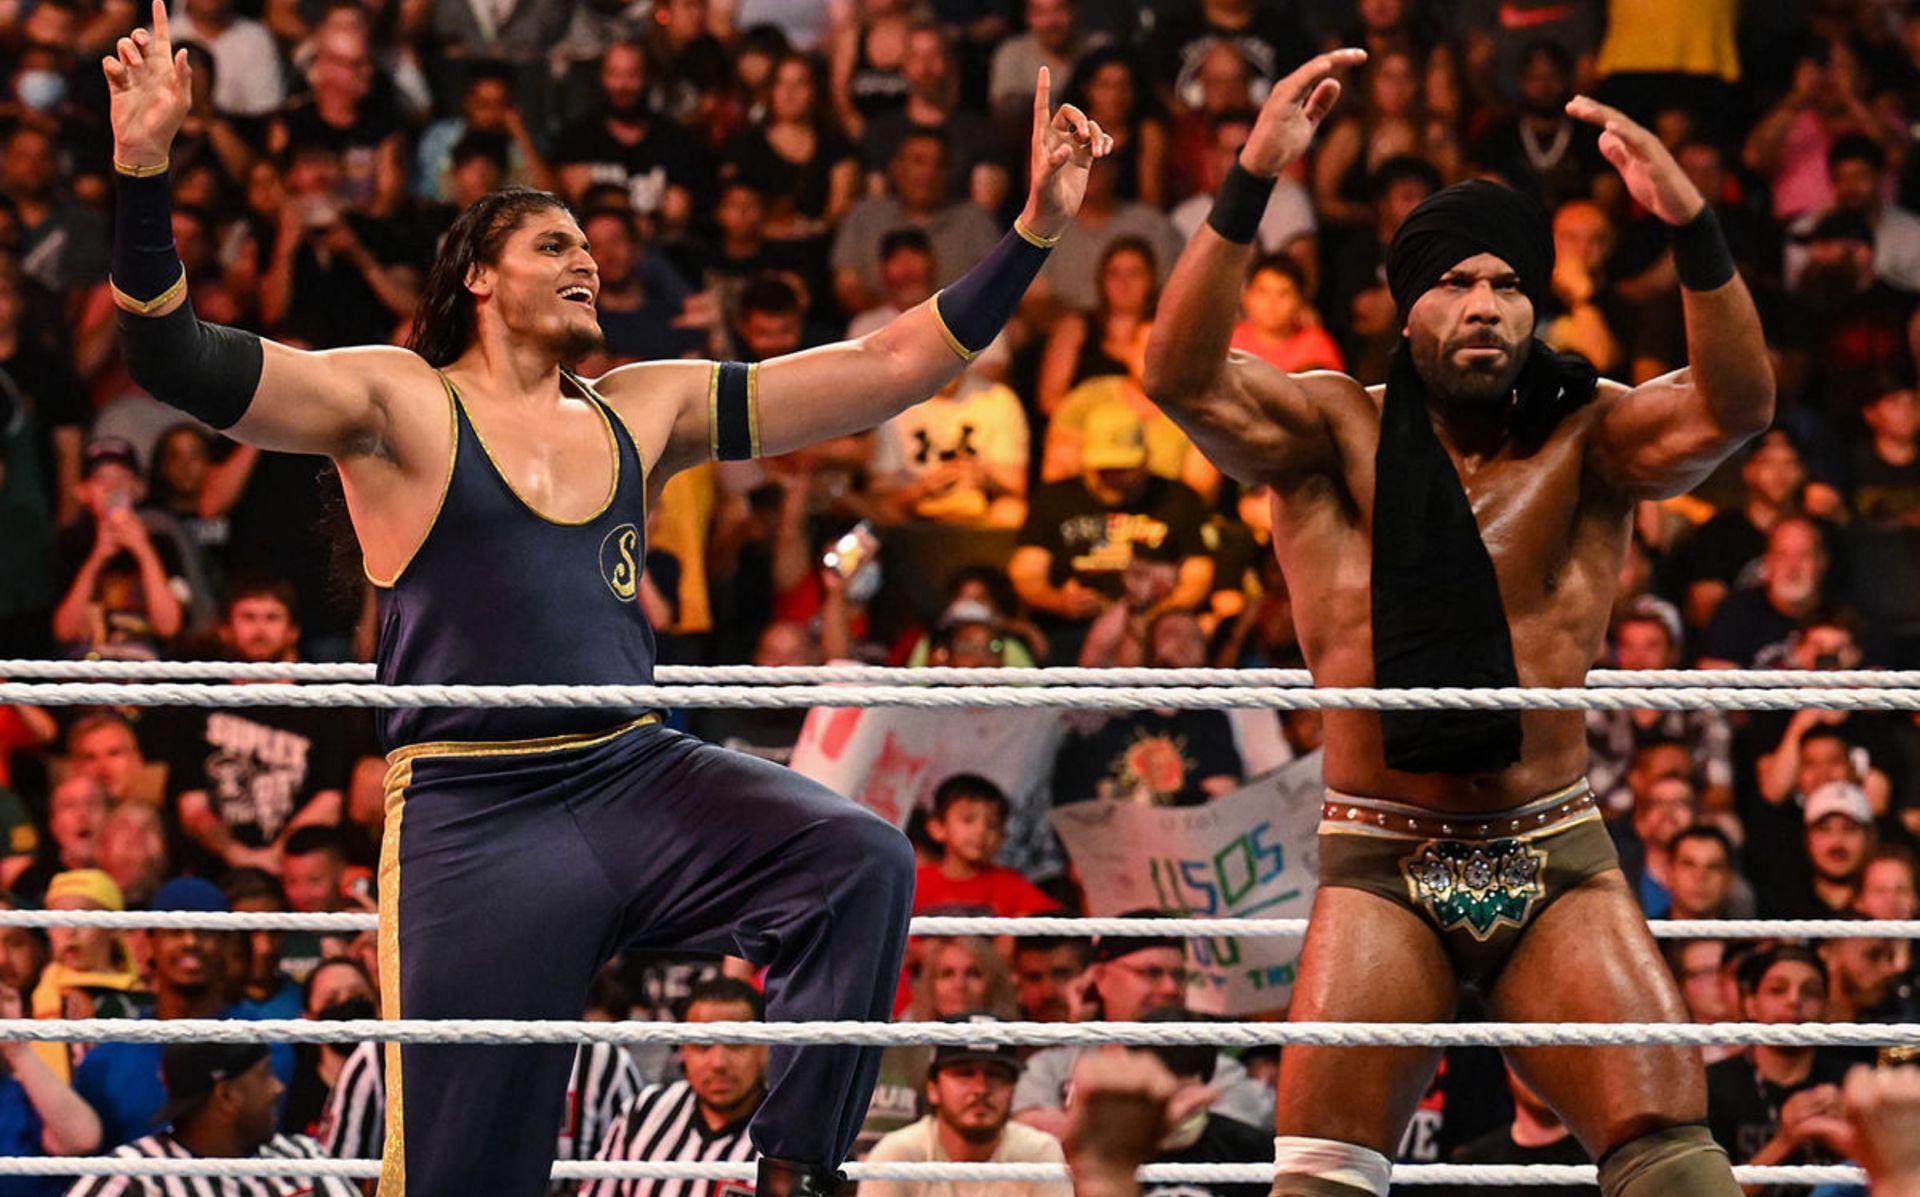 भारतीय WWE रेसलर दिलशेर शैंकी को एक बार फिर मिली हार